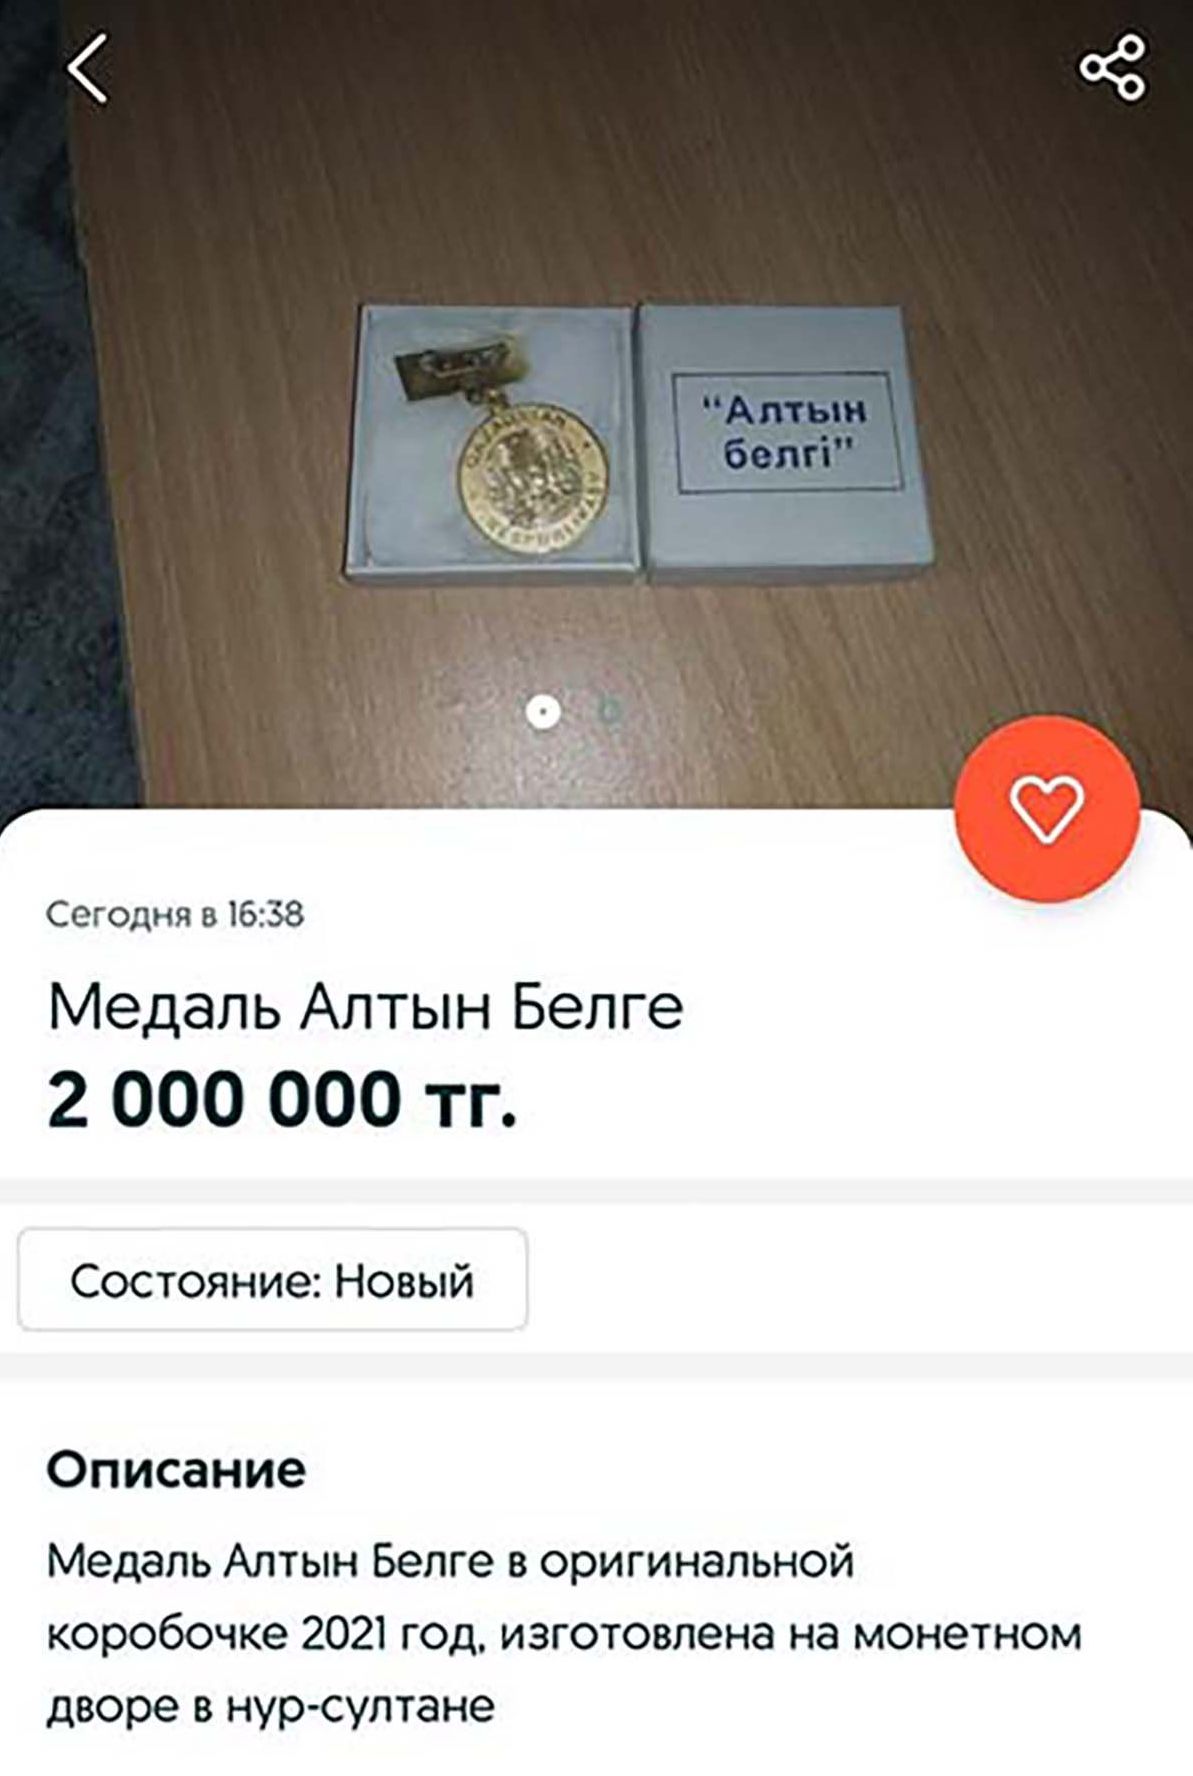 Знак Алтын Белгi продают за 2 млн тенге 